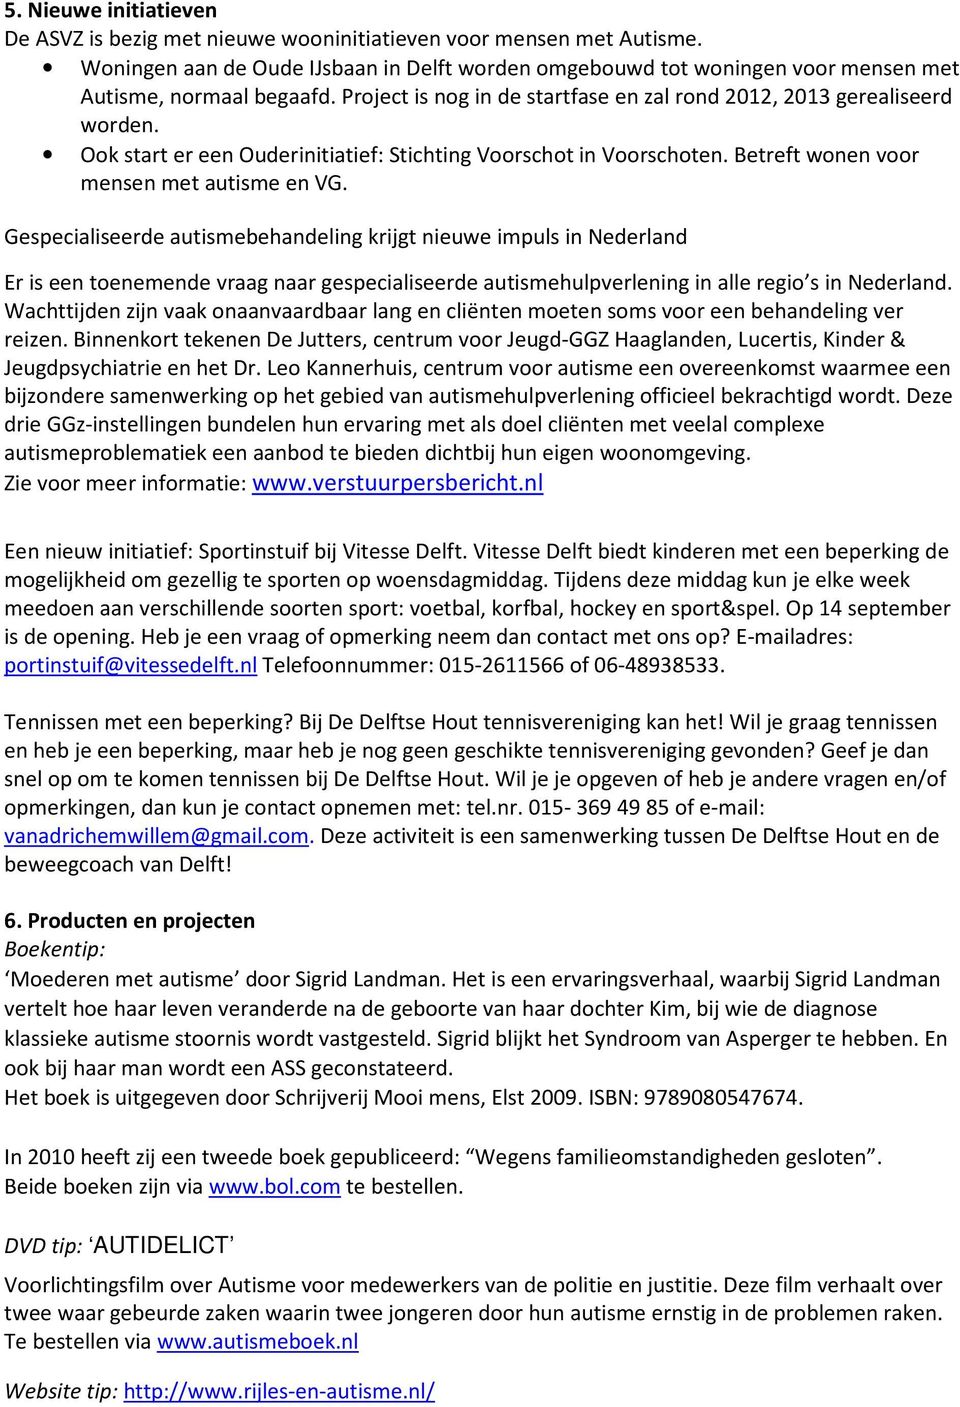 Ook start er een Ouderinitiatief: Stichting Voorschot in Voorschoten. Betreft wonen voor mensen met autisme en VG.